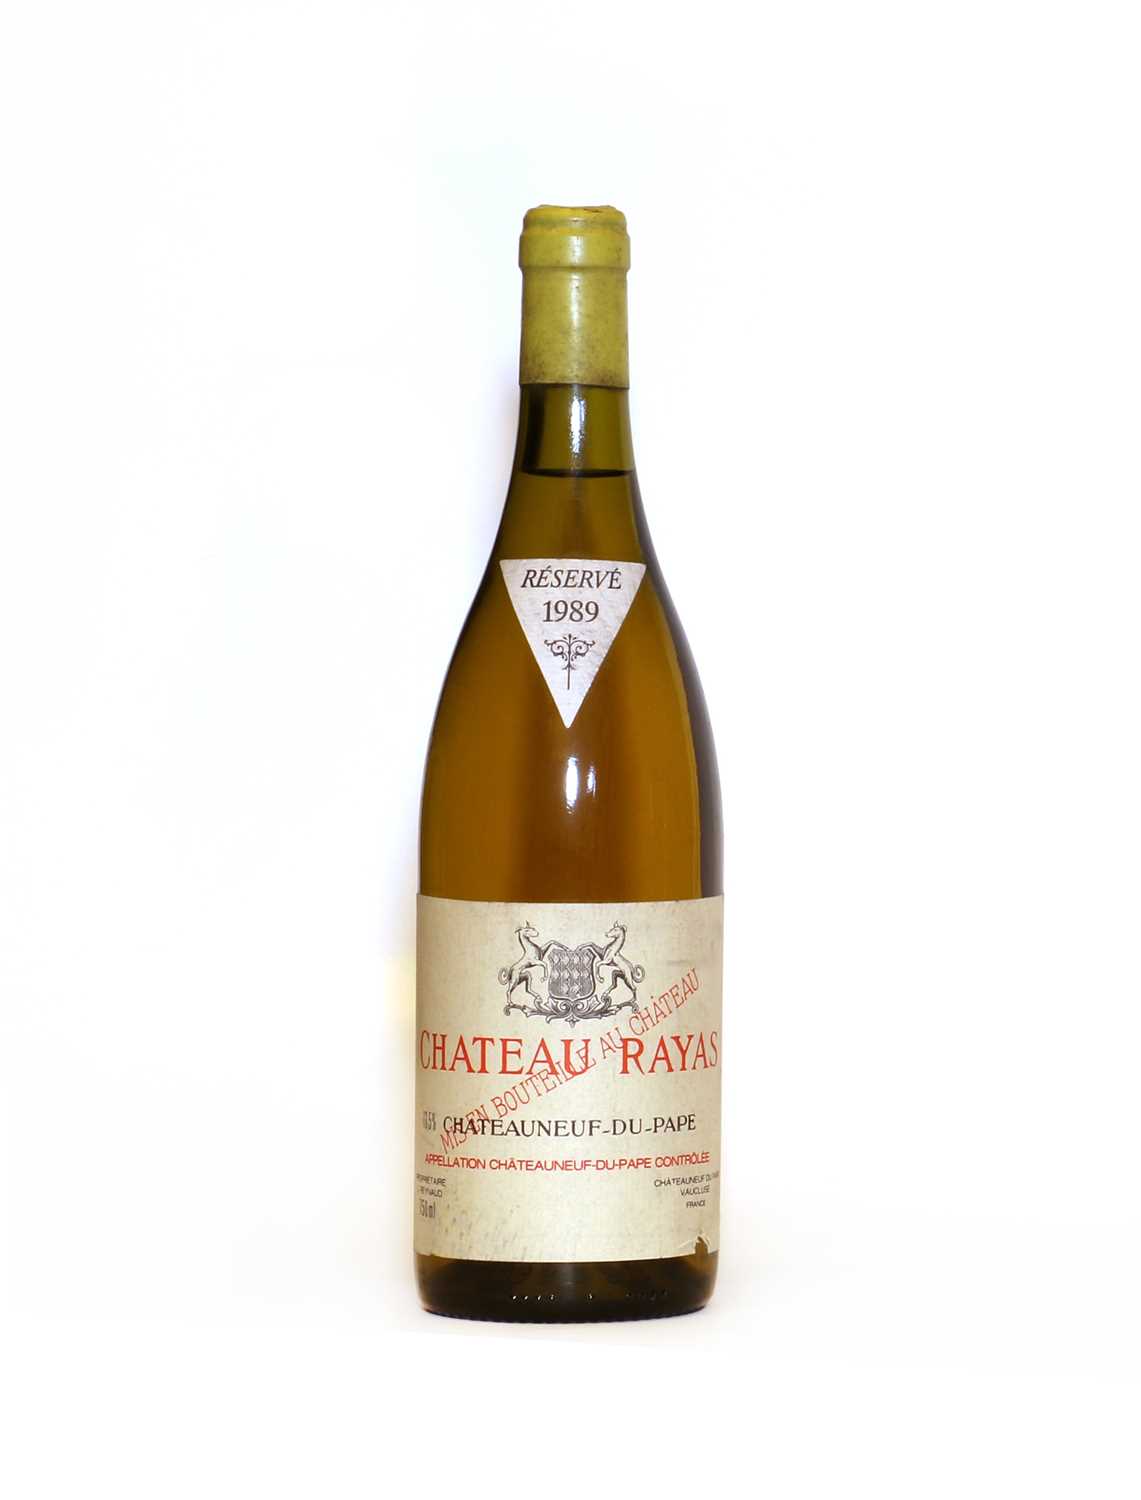 Lot 33 - Chateauneuf-du-Pape Blanc, Chateau Rayas, 1989, one bottle